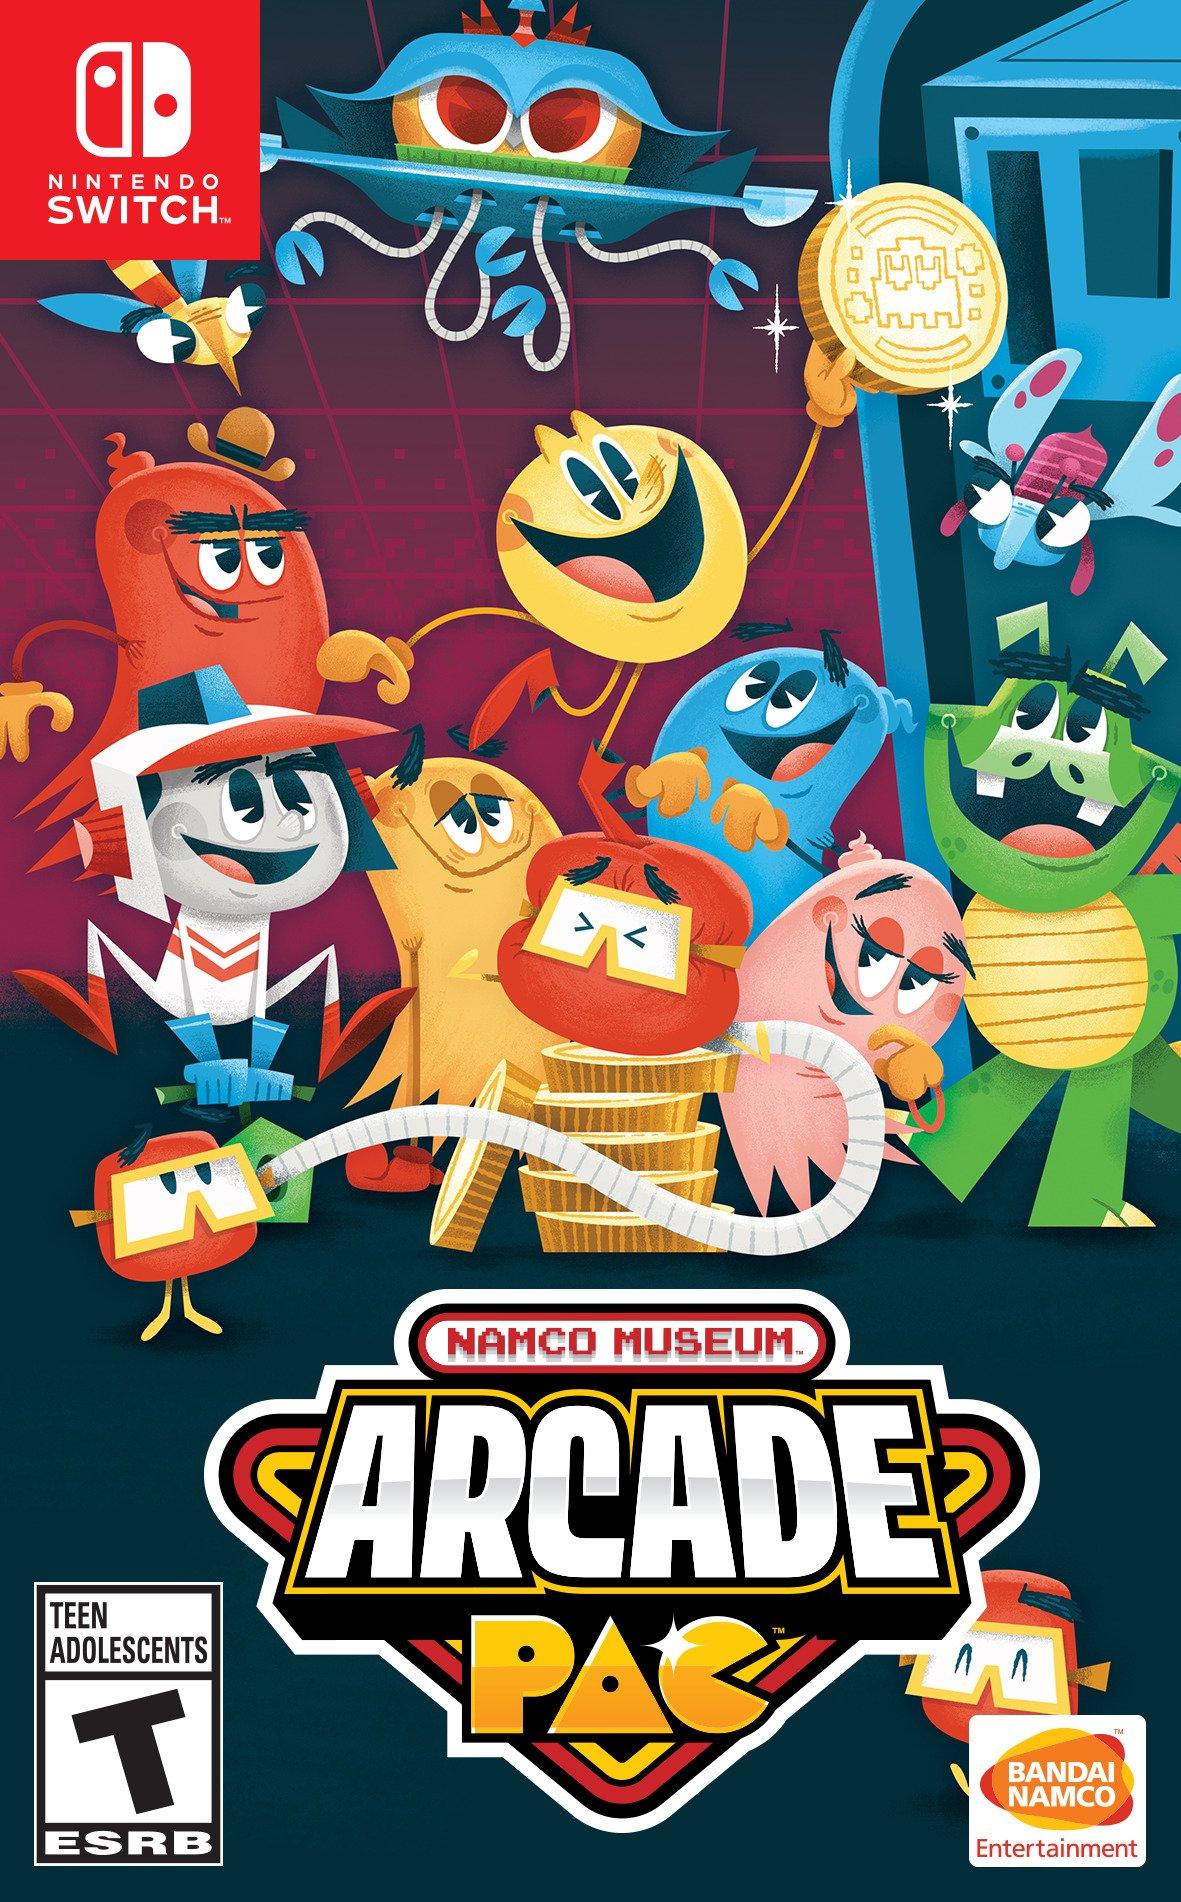 Arcade Archives PAC-MAN, Aplicações de download da Nintendo Switch, Jogos